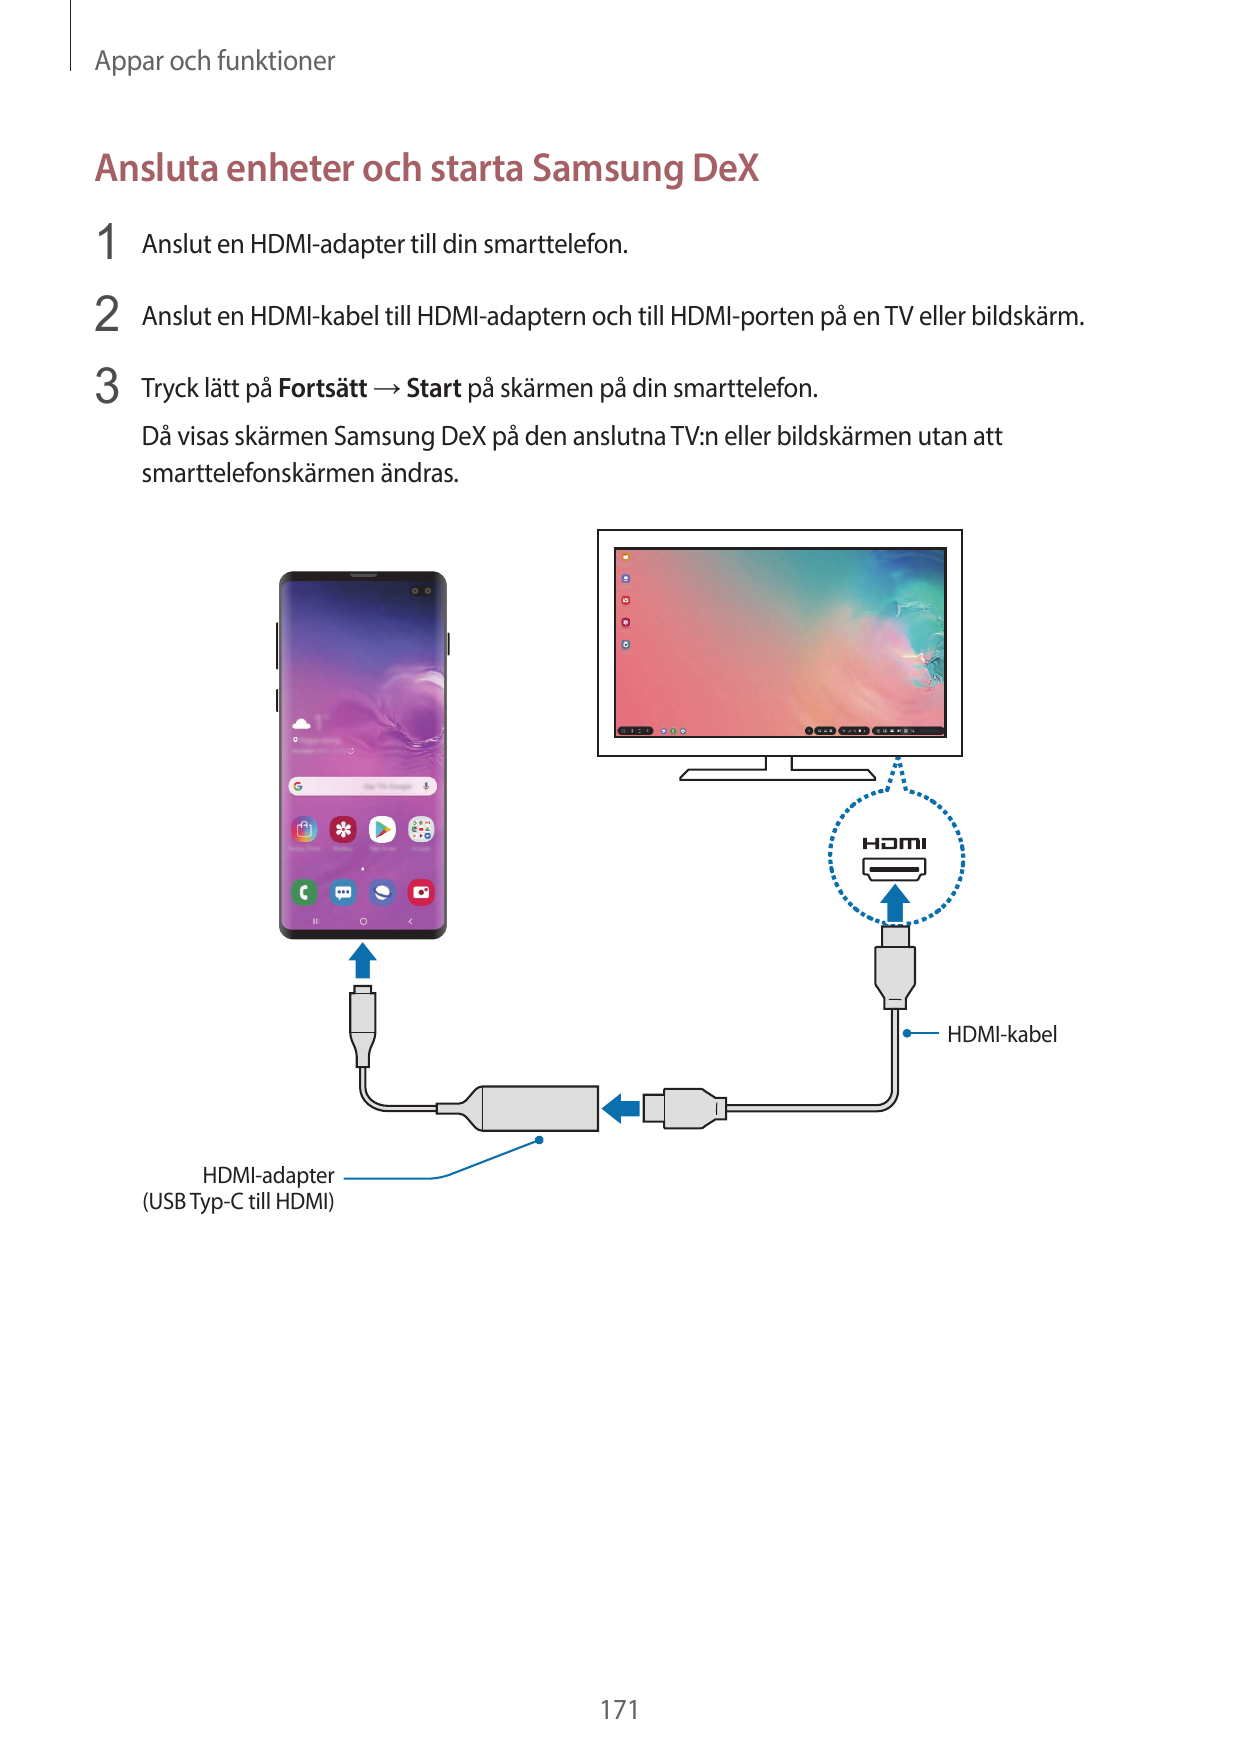 Appar och funktionerAnsluta enheter och starta Samsung DeX1 Anslut en HDMI-adapter till din smarttelefon.2 Anslut en HDMI-kabel 